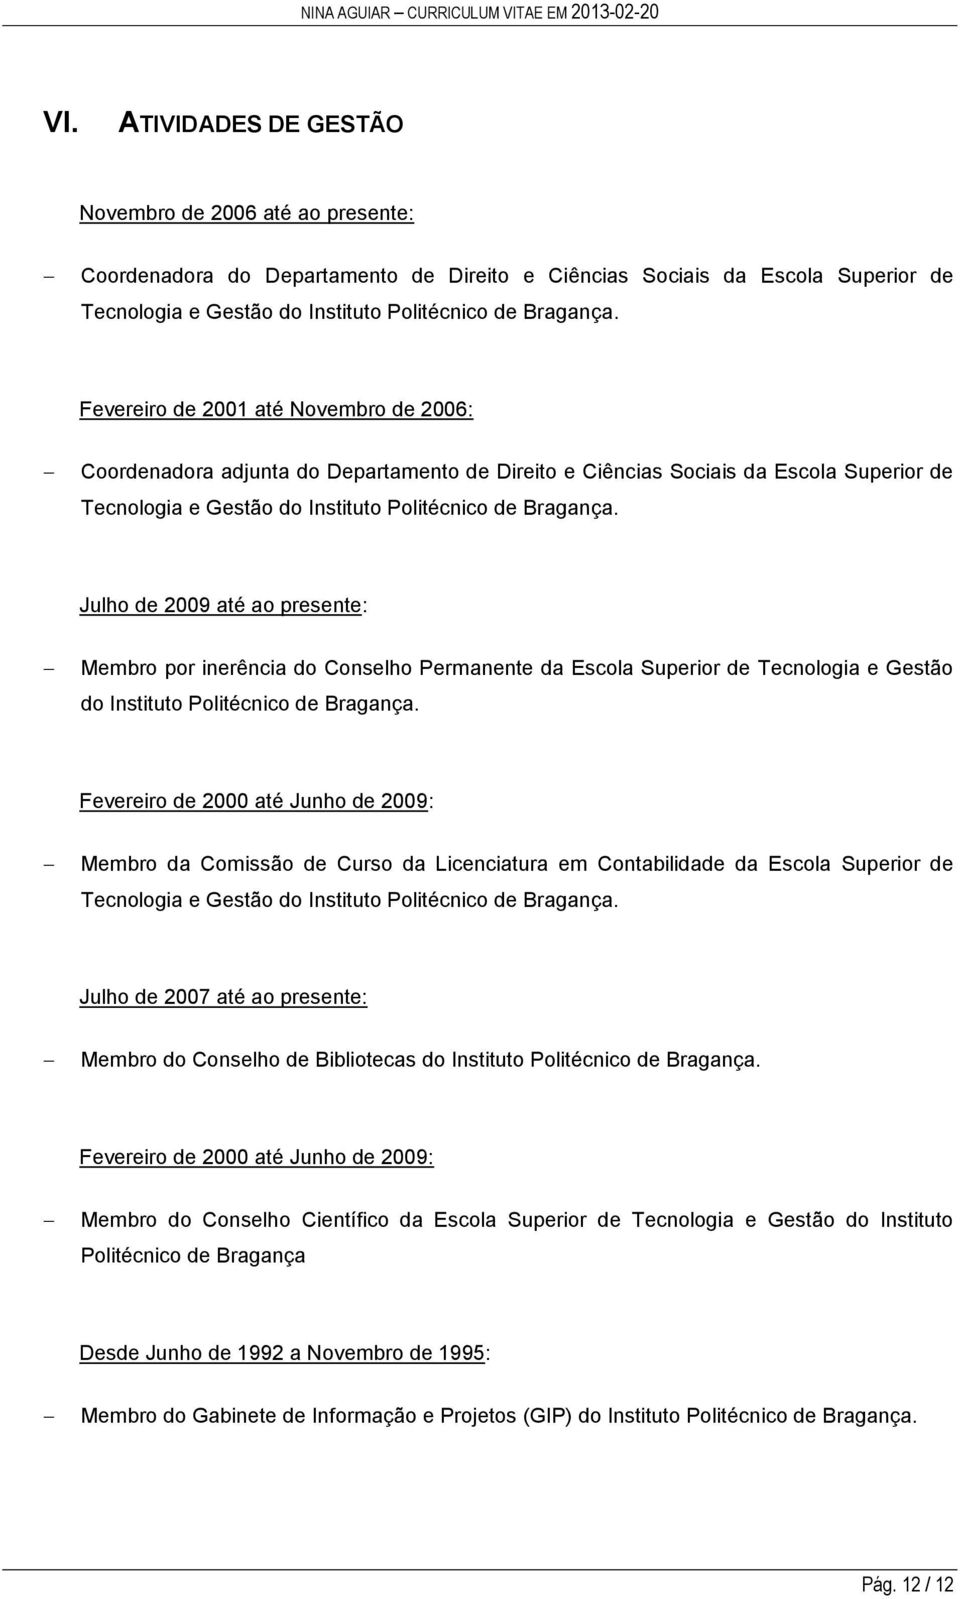 Julho de 2009 até ao presente: Membro por inerência do Conselho Permanente da Escola Superior de Tecnologia e Gestão do Instituto Politécnico de Bragança.